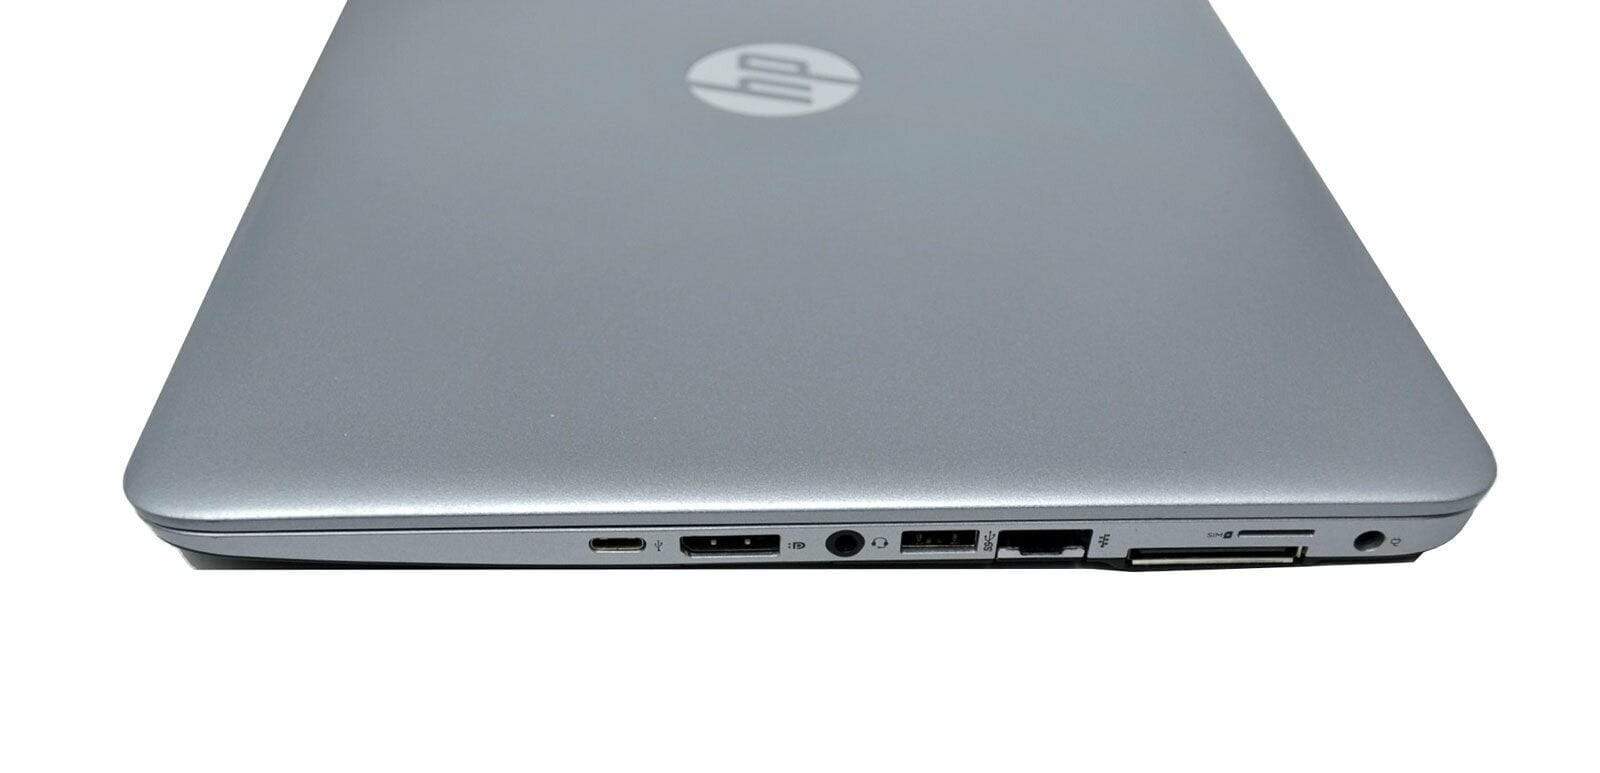 HP EliteBook 840 G3 FHD UltraBook: 8GB RAM, 500GB HDD, Warranty - CruiseTech